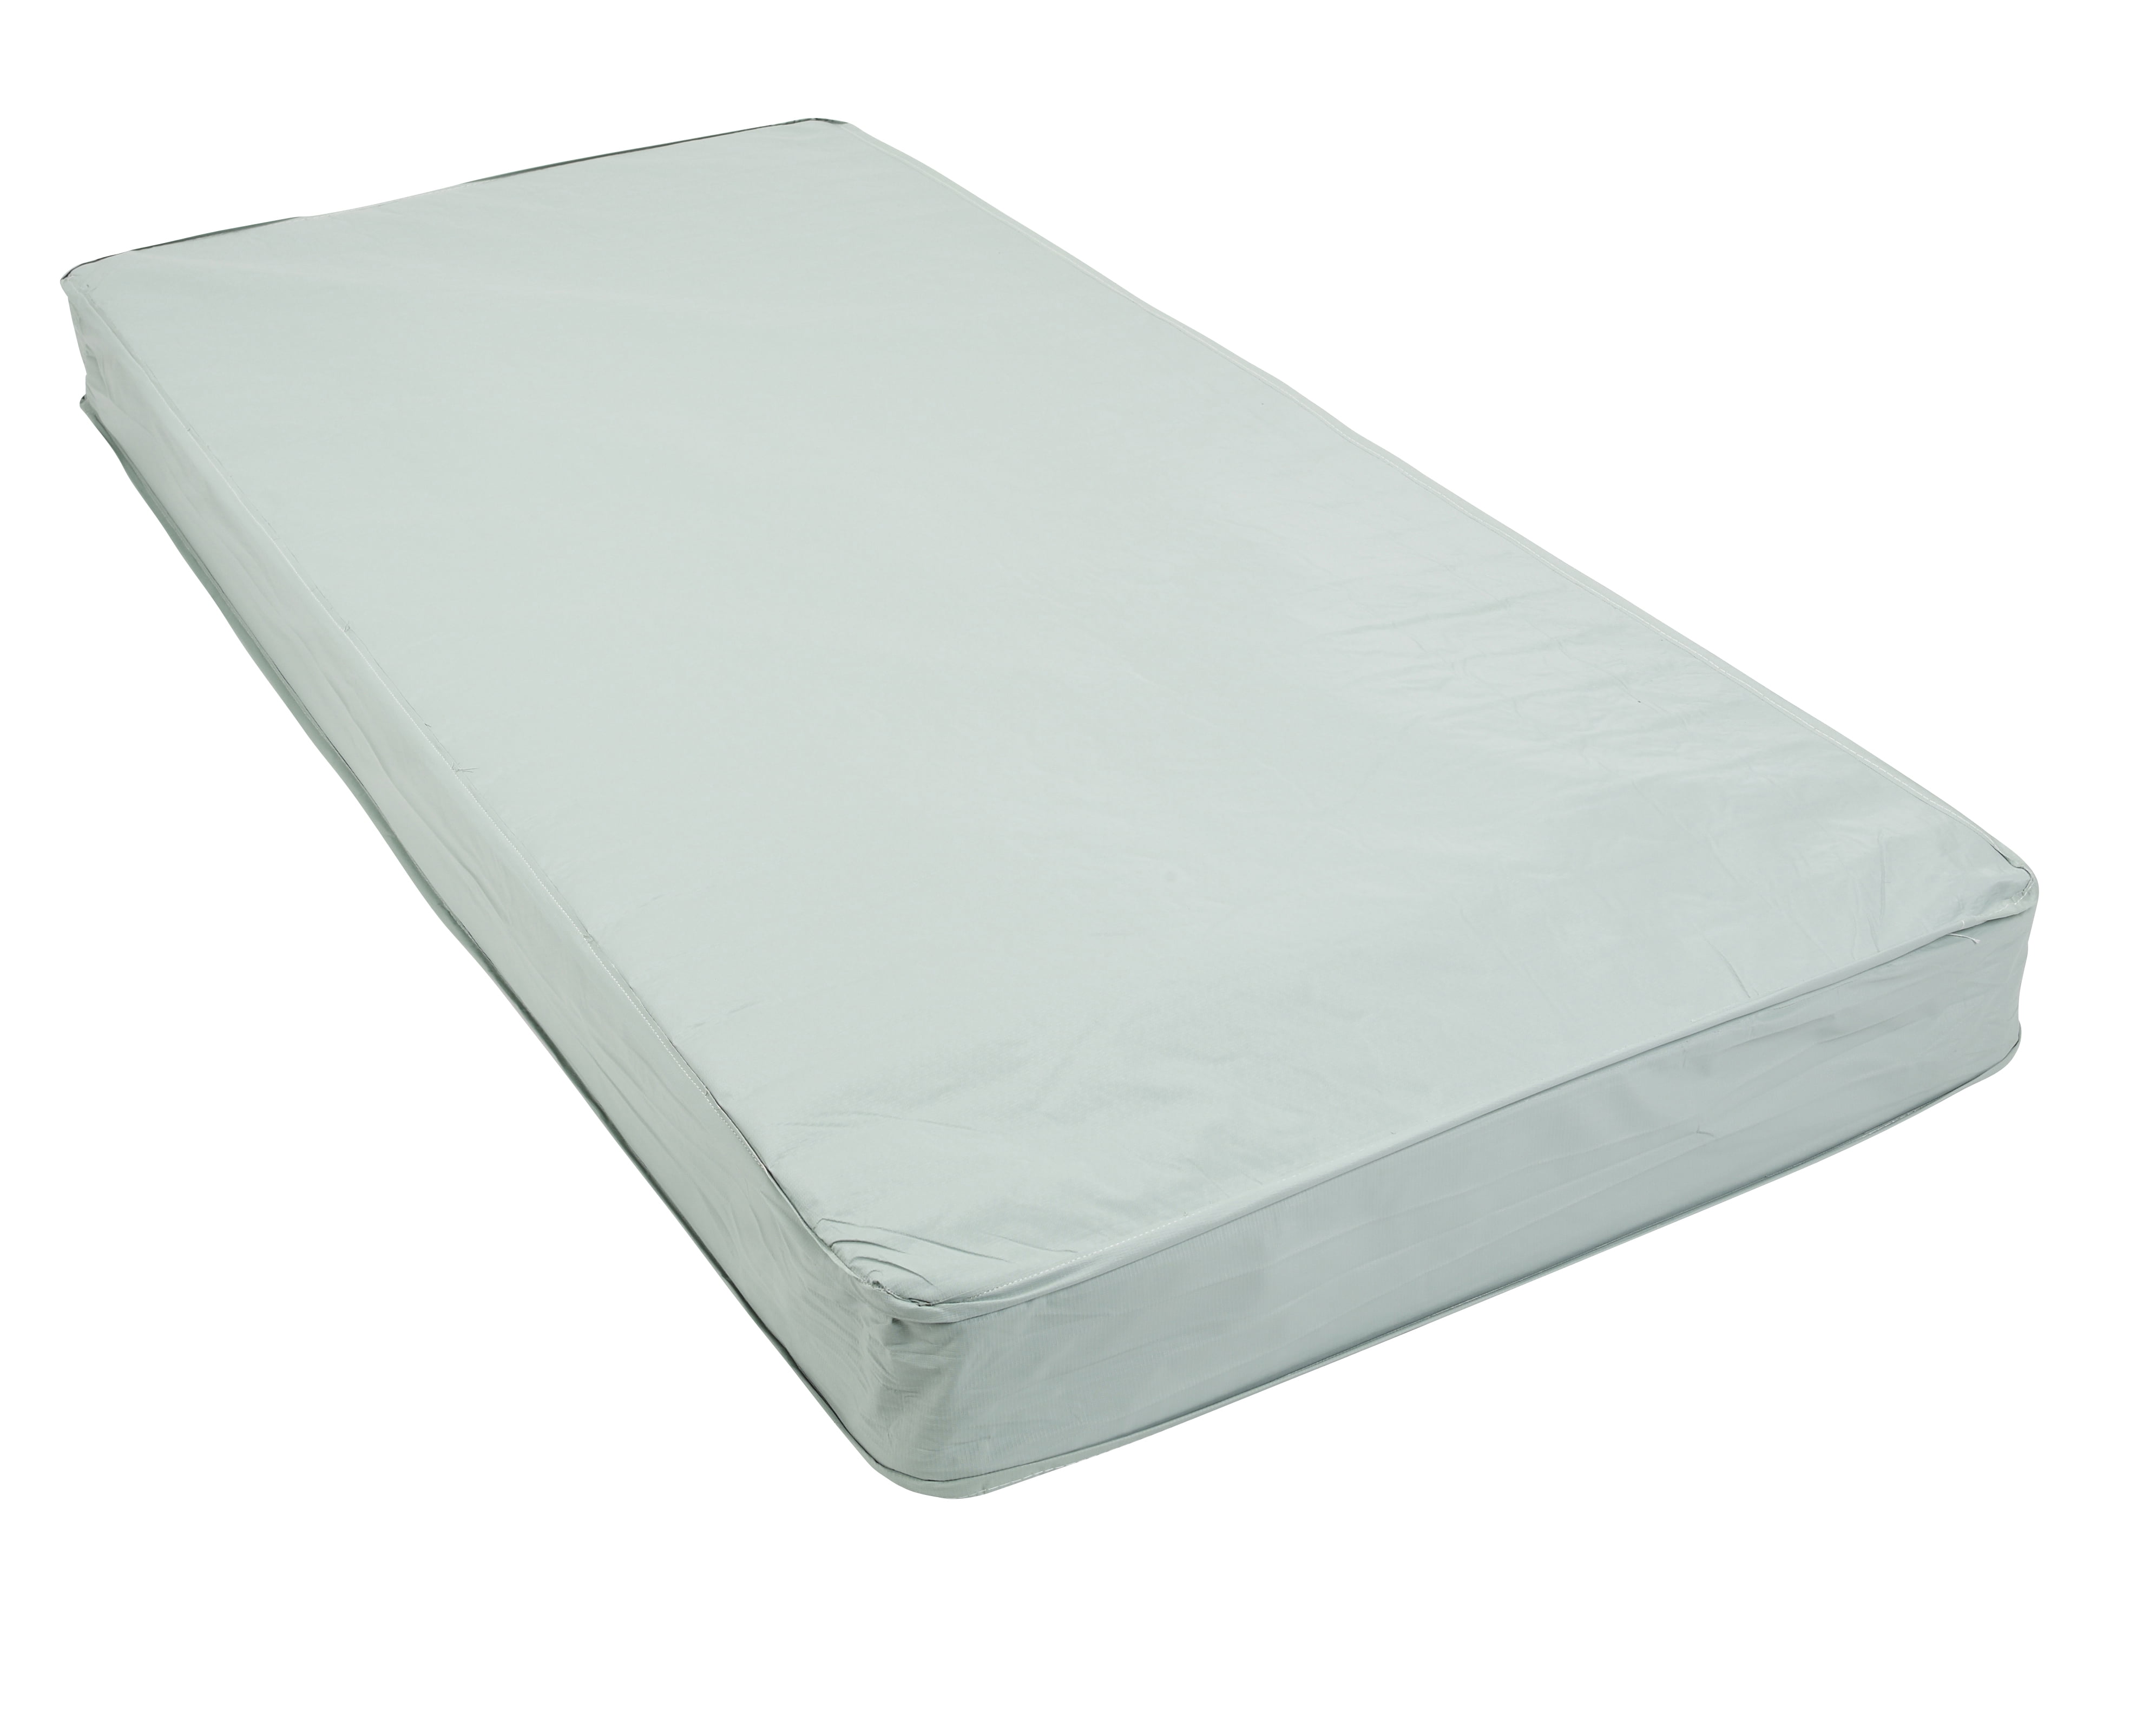 medical bed mattress price